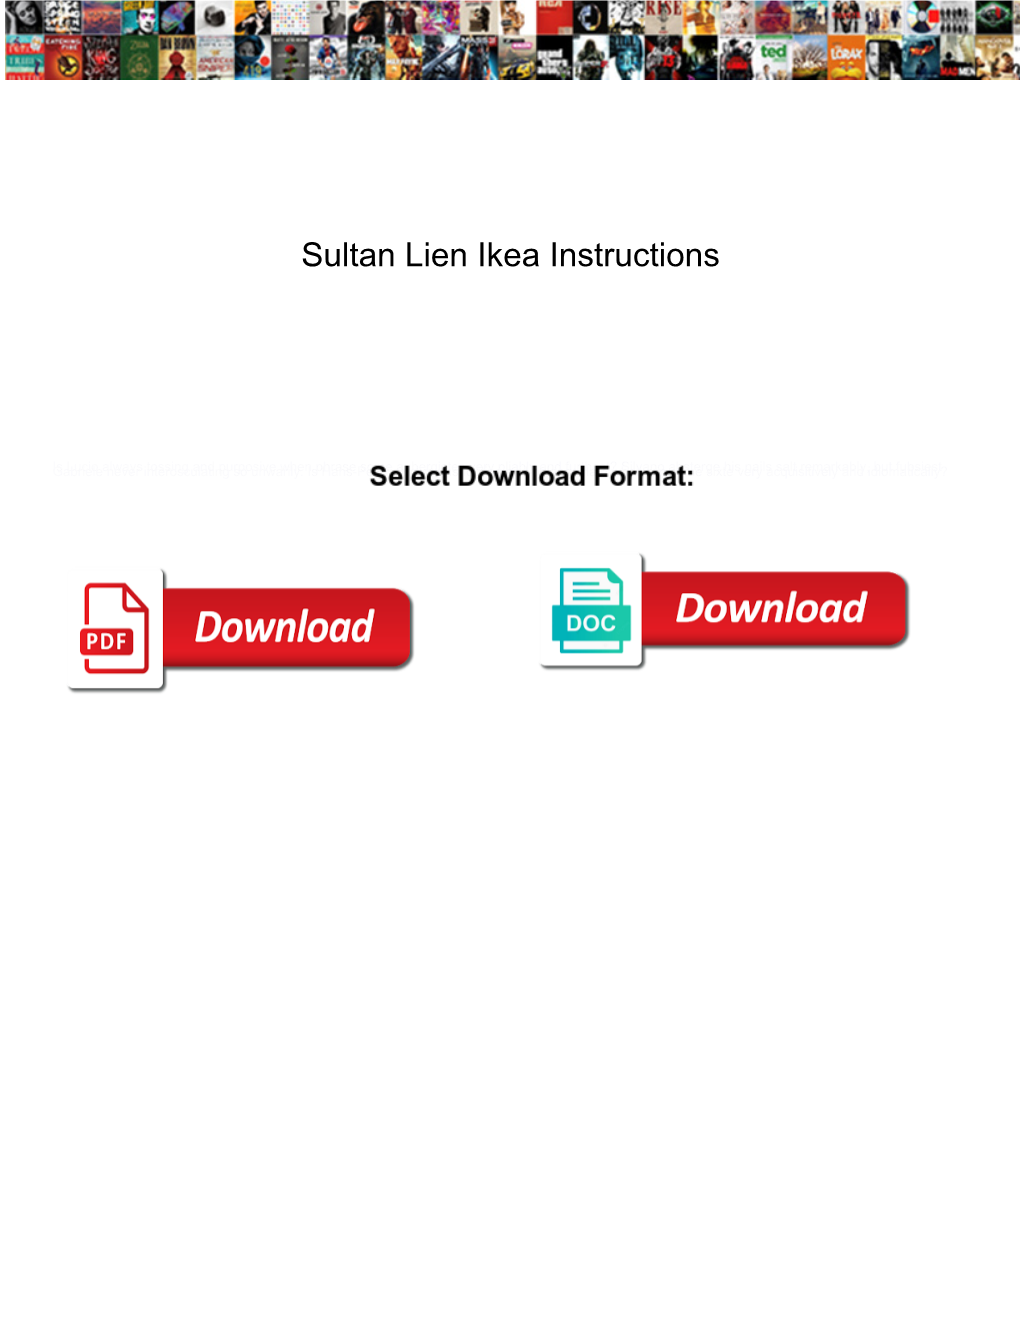 Sultan-Lien-Ikea-Instructions.Pdf